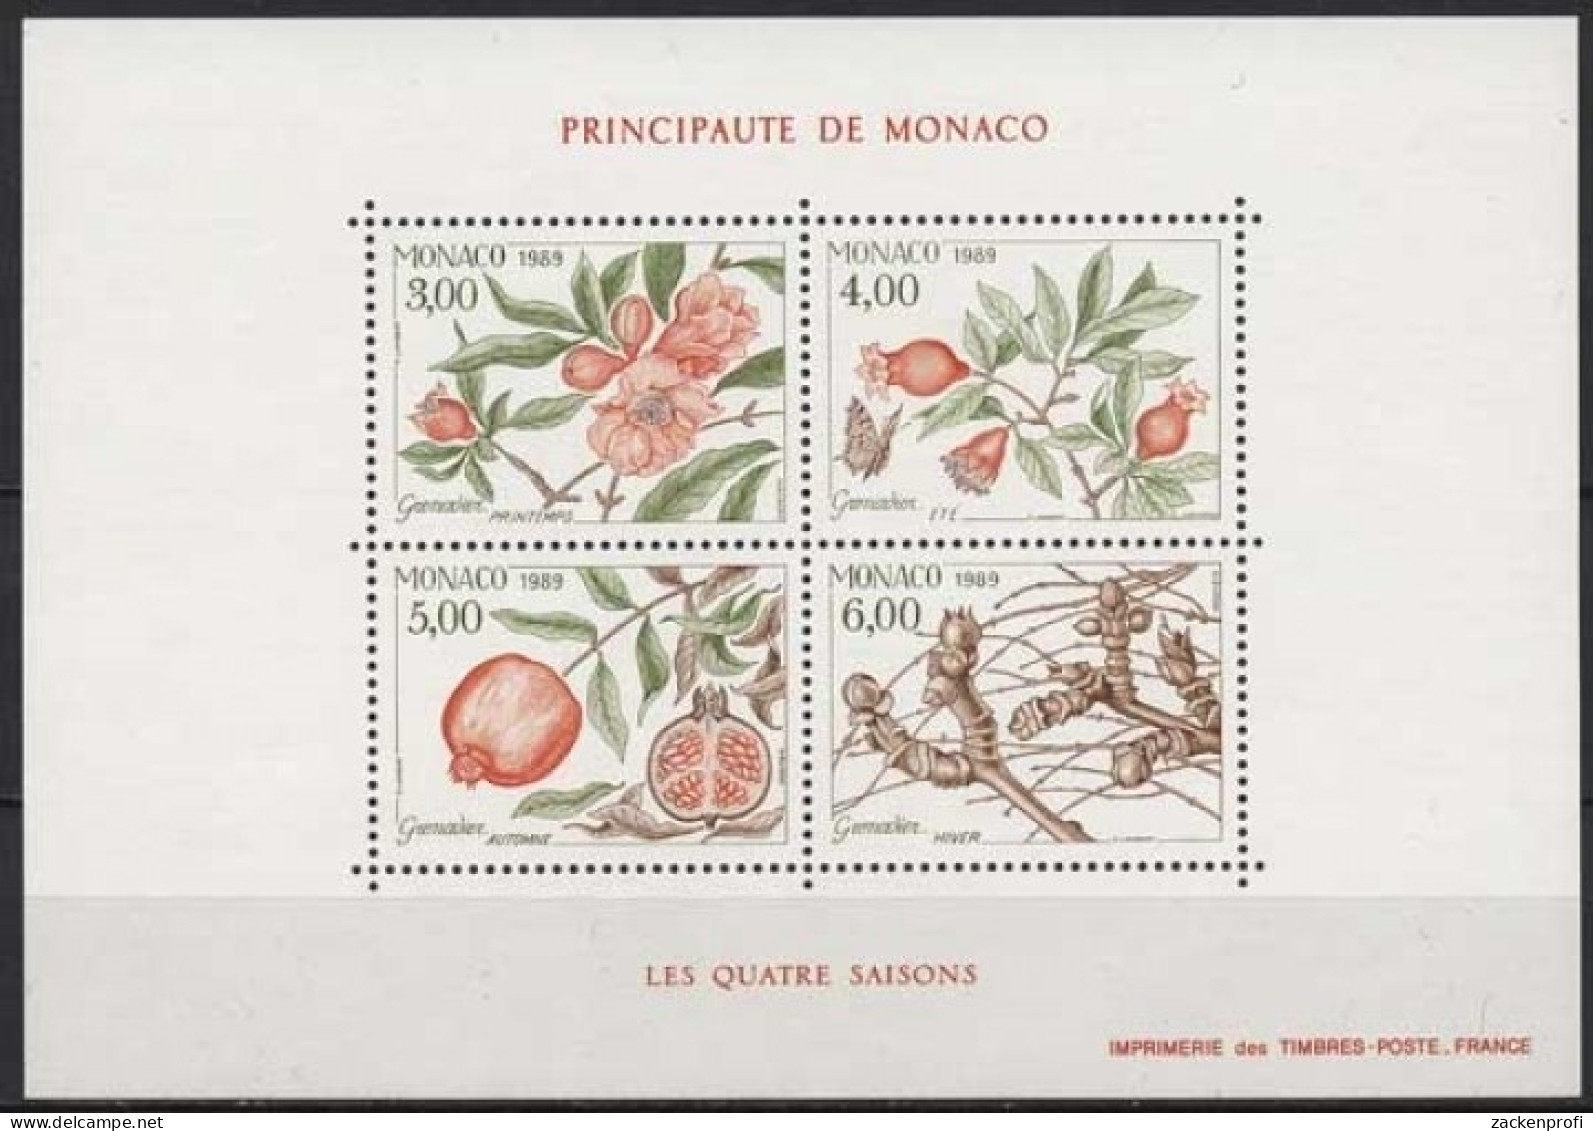 Monaco 1989 Vier Jahreszeiten Granatapfelbaum Block 42 Postfrisch (C91351) - Blocs